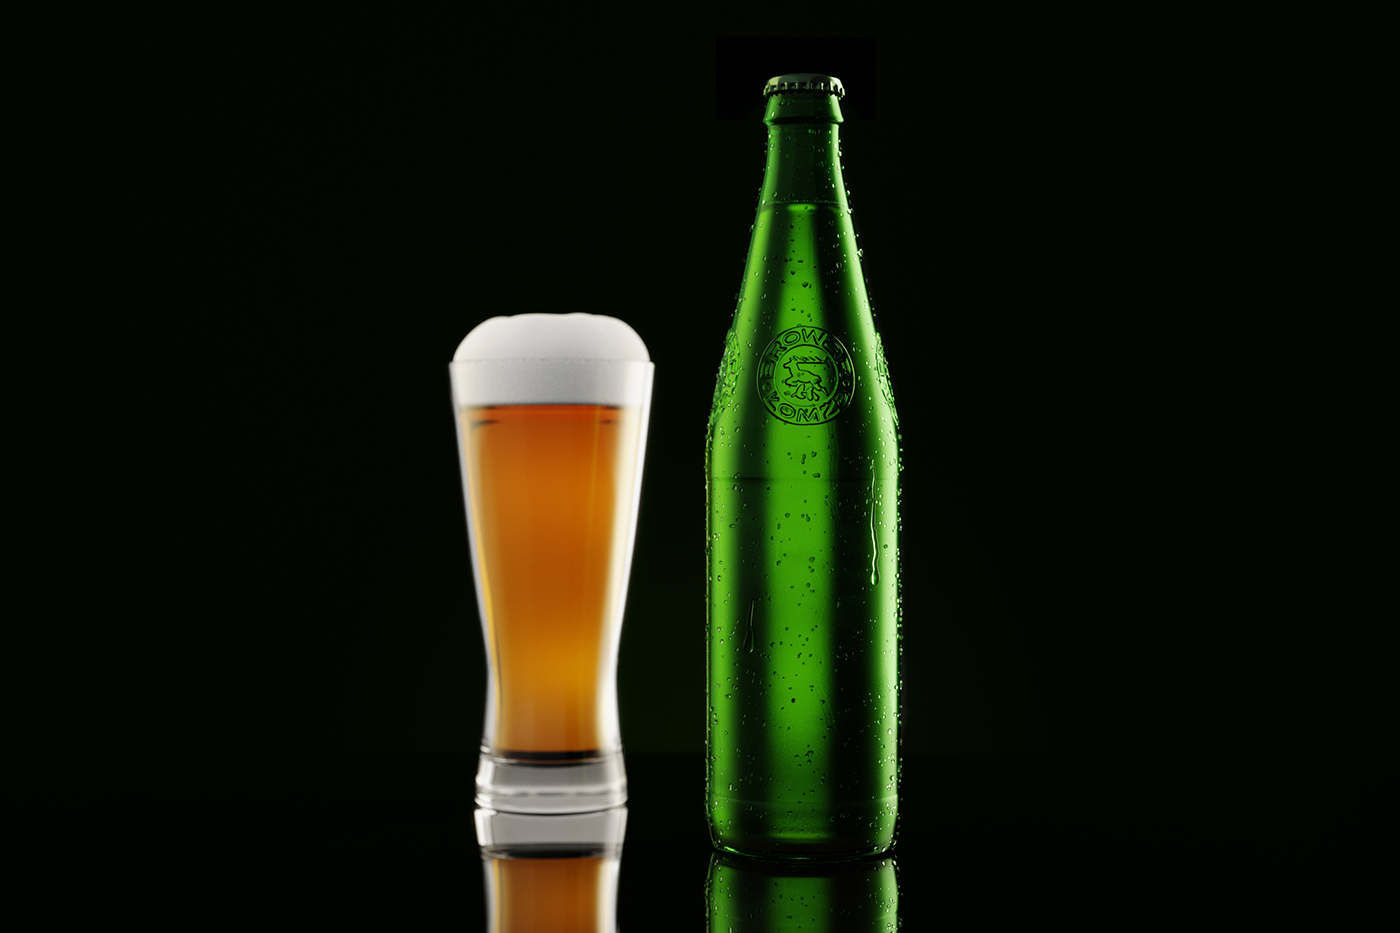 Packaging design product bottle rebranding beer brewery